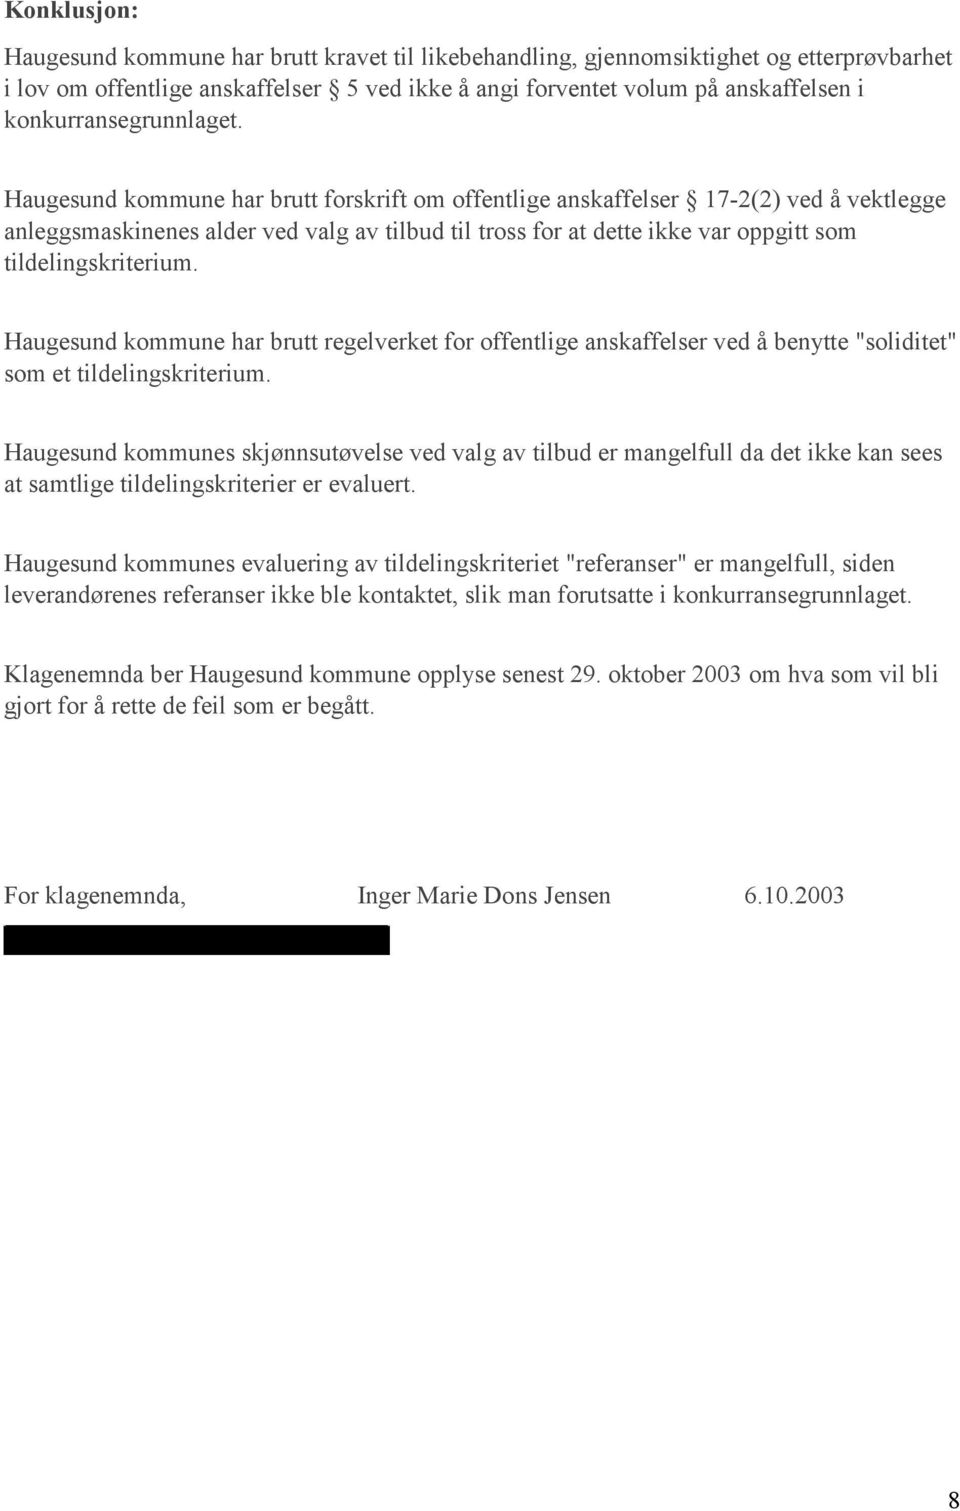 Haugesund kommune har brutt forskrift om offentlige anskaffelser 17-2(2) ved å vektlegge anleggsmaskinenes alder ved valg av tilbud til tross for at dette ikke var oppgitt som tildelingskriterium.